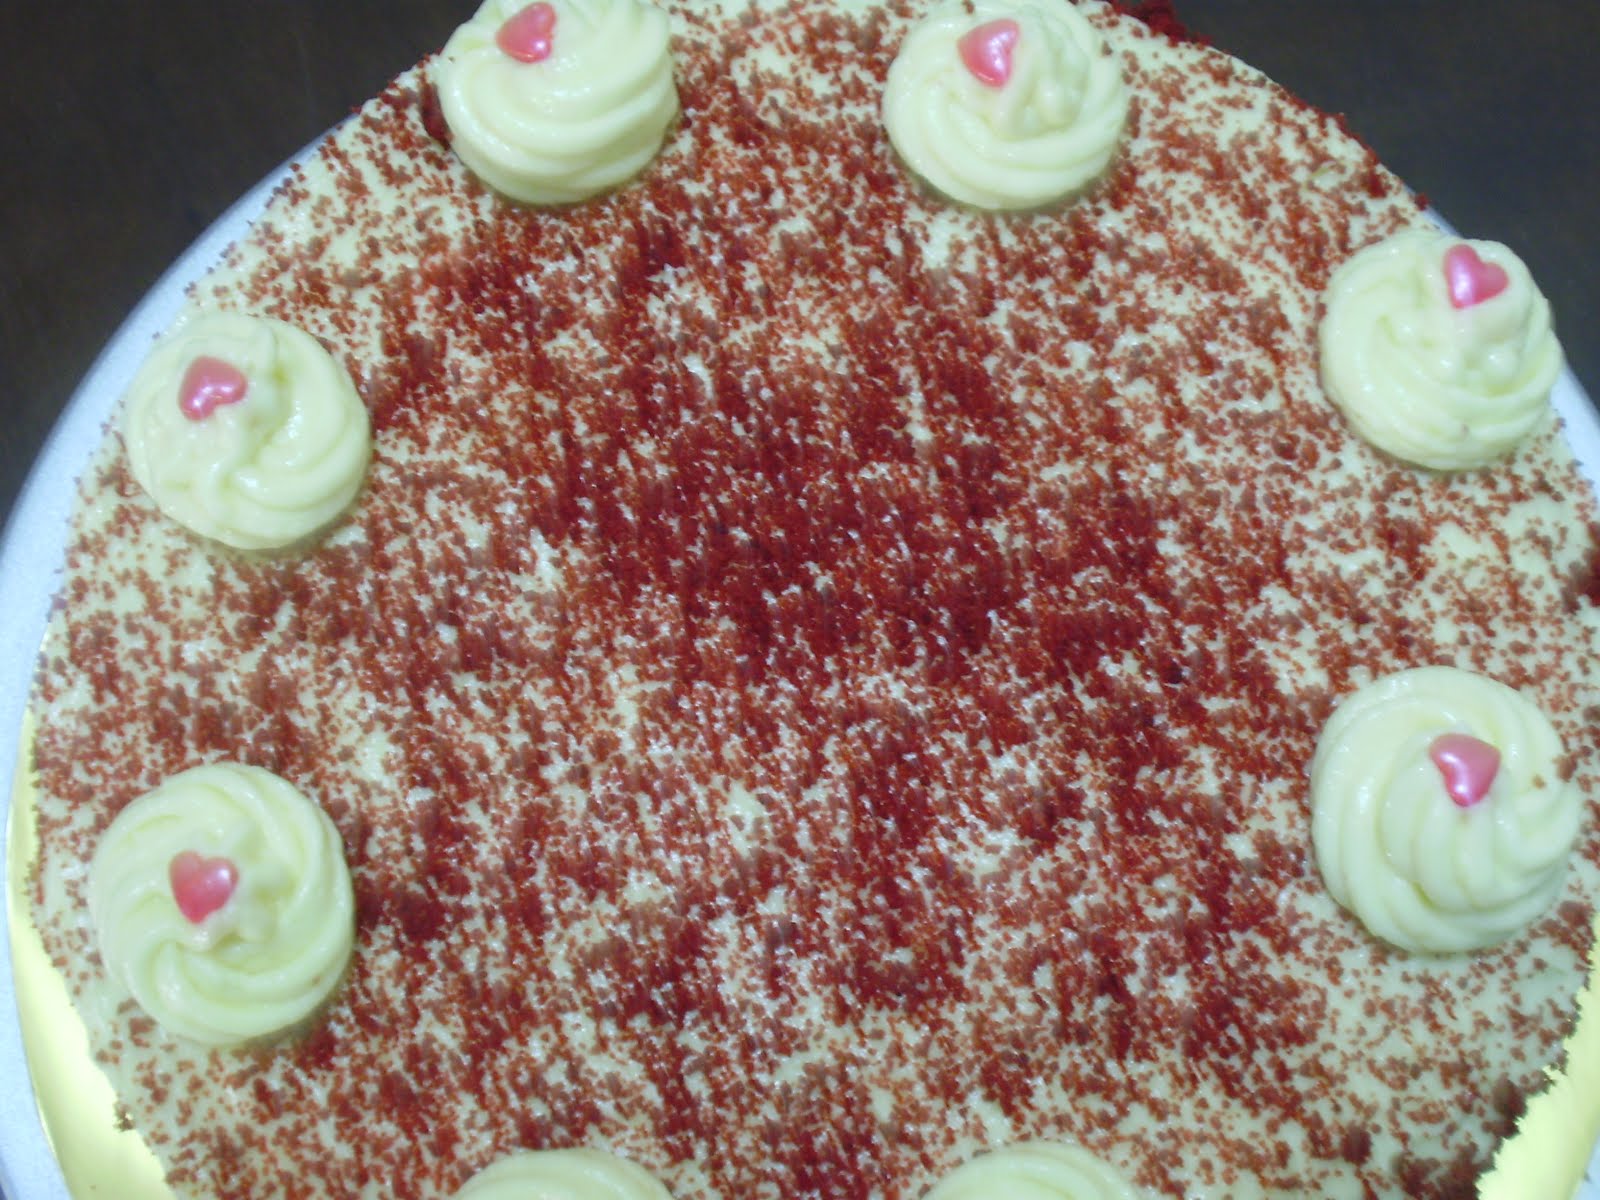 KELAS RED VELVET CAKE